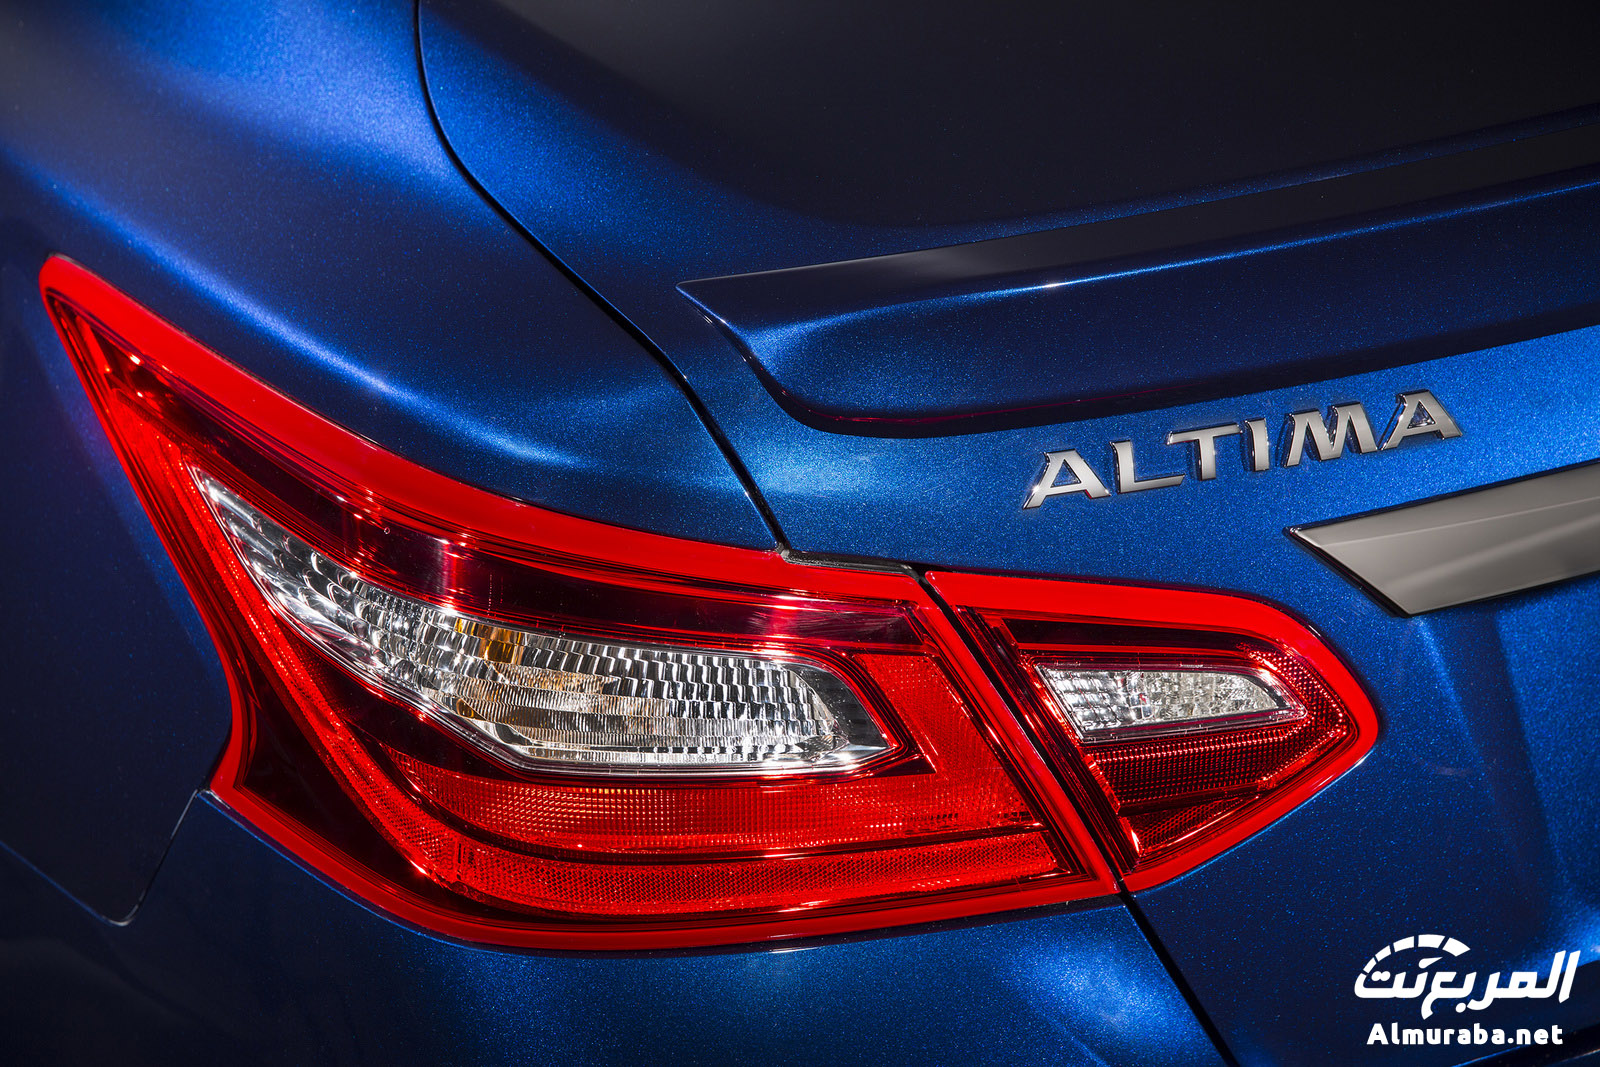 نيسان التيما 2016 بالشكل الجديد وبتطويرات داخلية وخارجية "صور ومواصفات وتقرير" Nissan Altima 8